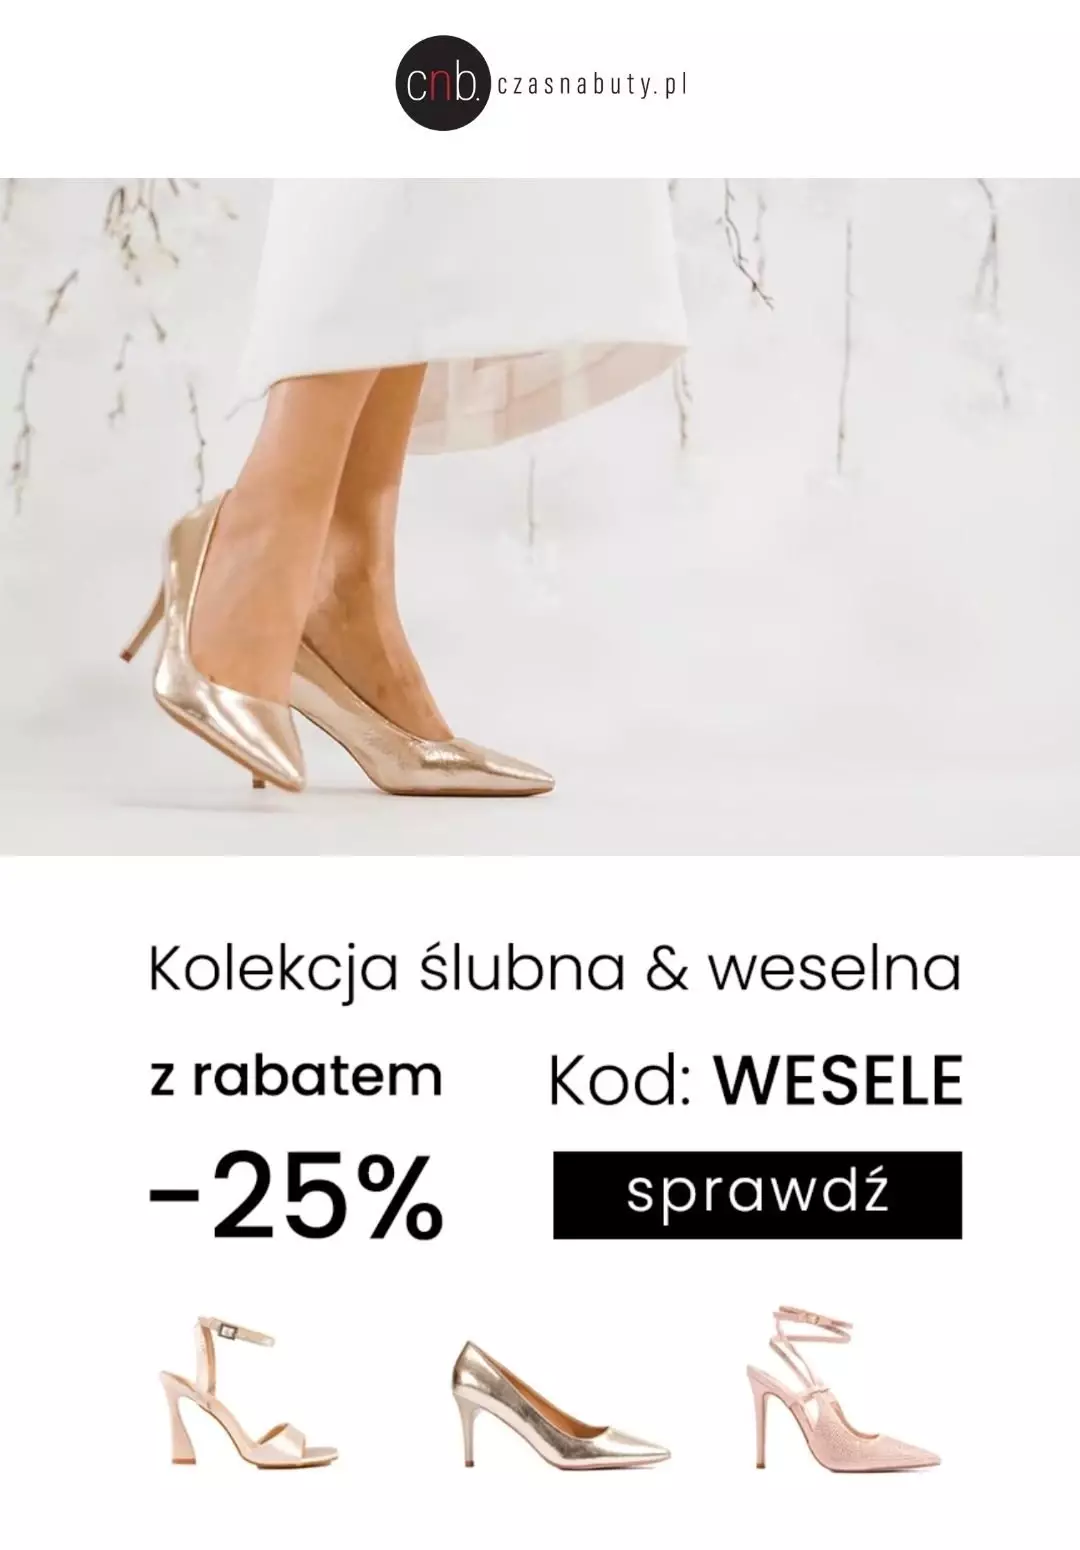 Czasnabuty.pl - gazetka promocyjna -25% z kodem na kolekcję ślubną i weselną od środy 31.05 